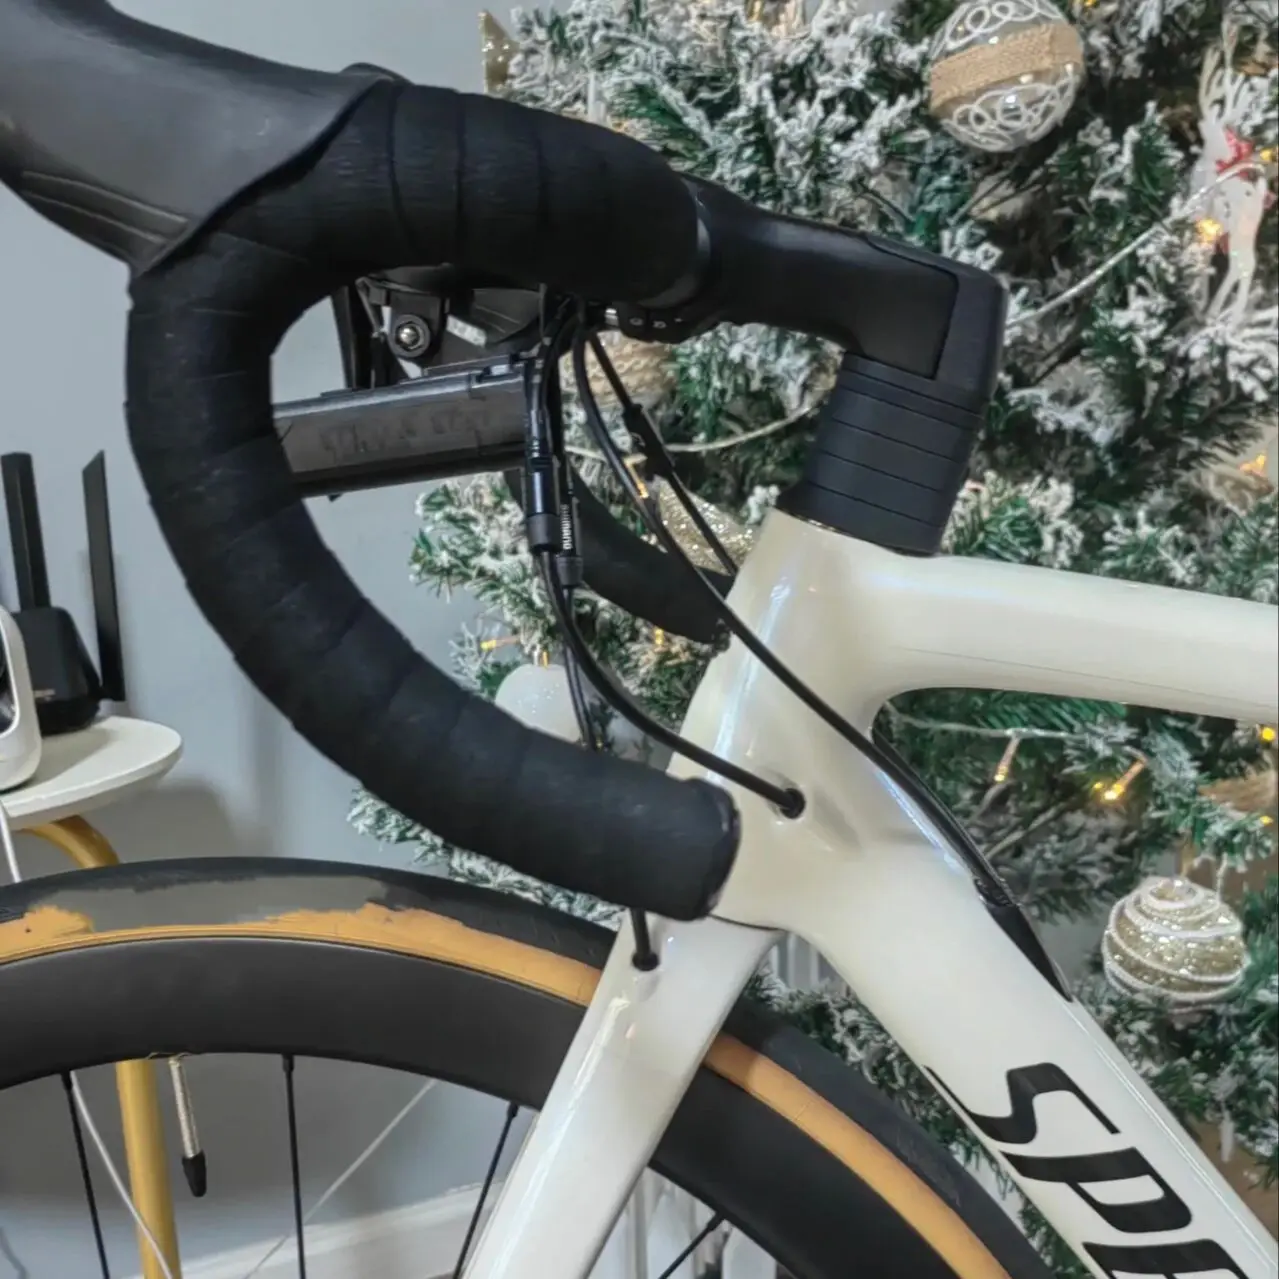 

2023 новые цвета Tarmac SL7 Carbon T1100 дорожный велосипед, карбоновая рама, включая руль BSA (свяжитесь со мной, чтобы узнать больше)